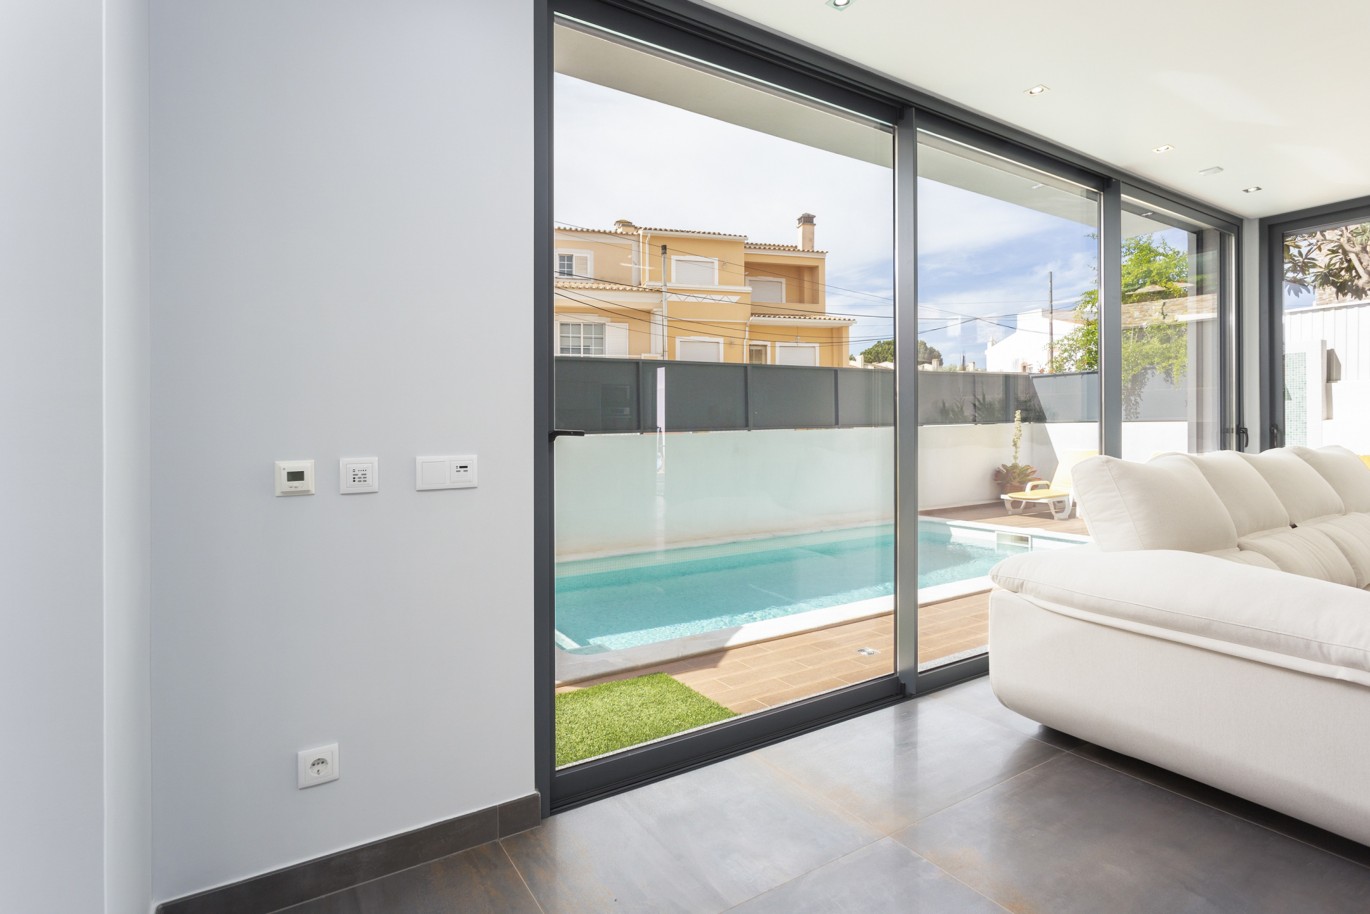 4 bedroom luxury detached villa with pool, in Bemposta, Algarve_224029